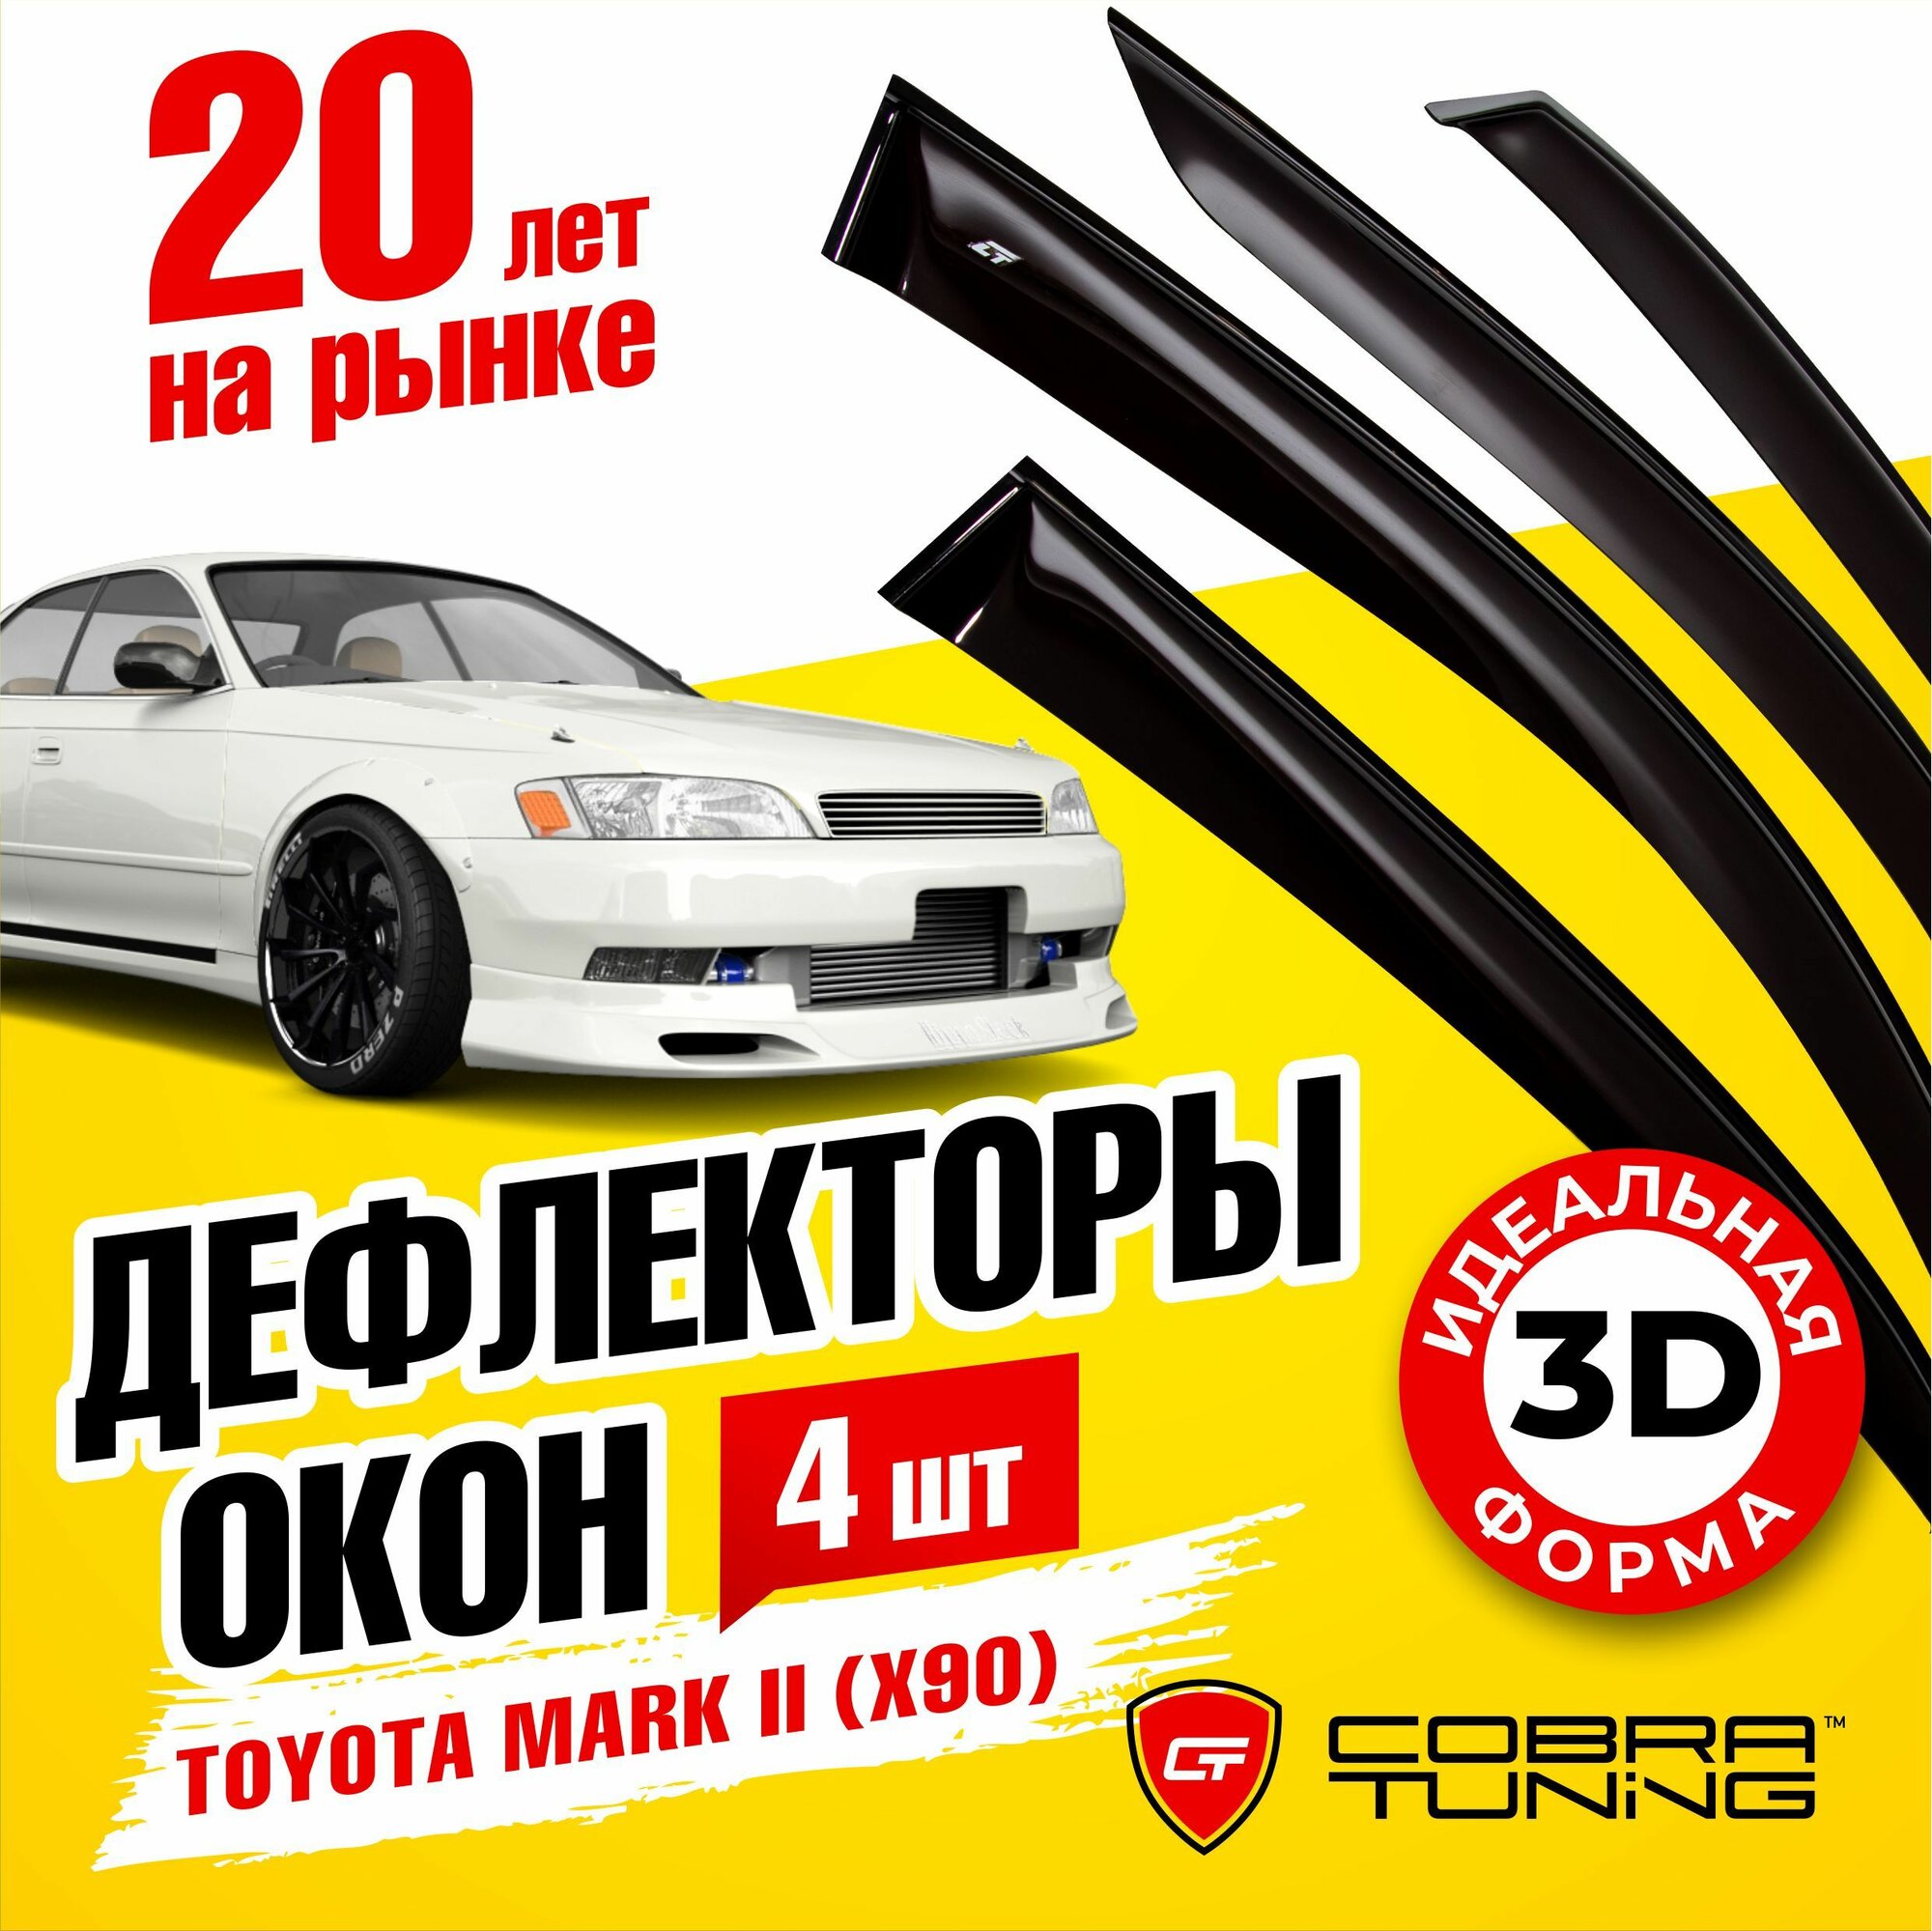 Дефлекторы боковых окон для Toyota Mark 2 (Тойота Марк) седан (X90) 1992-1996 ветровики с хром молдингом Cobra Tuning